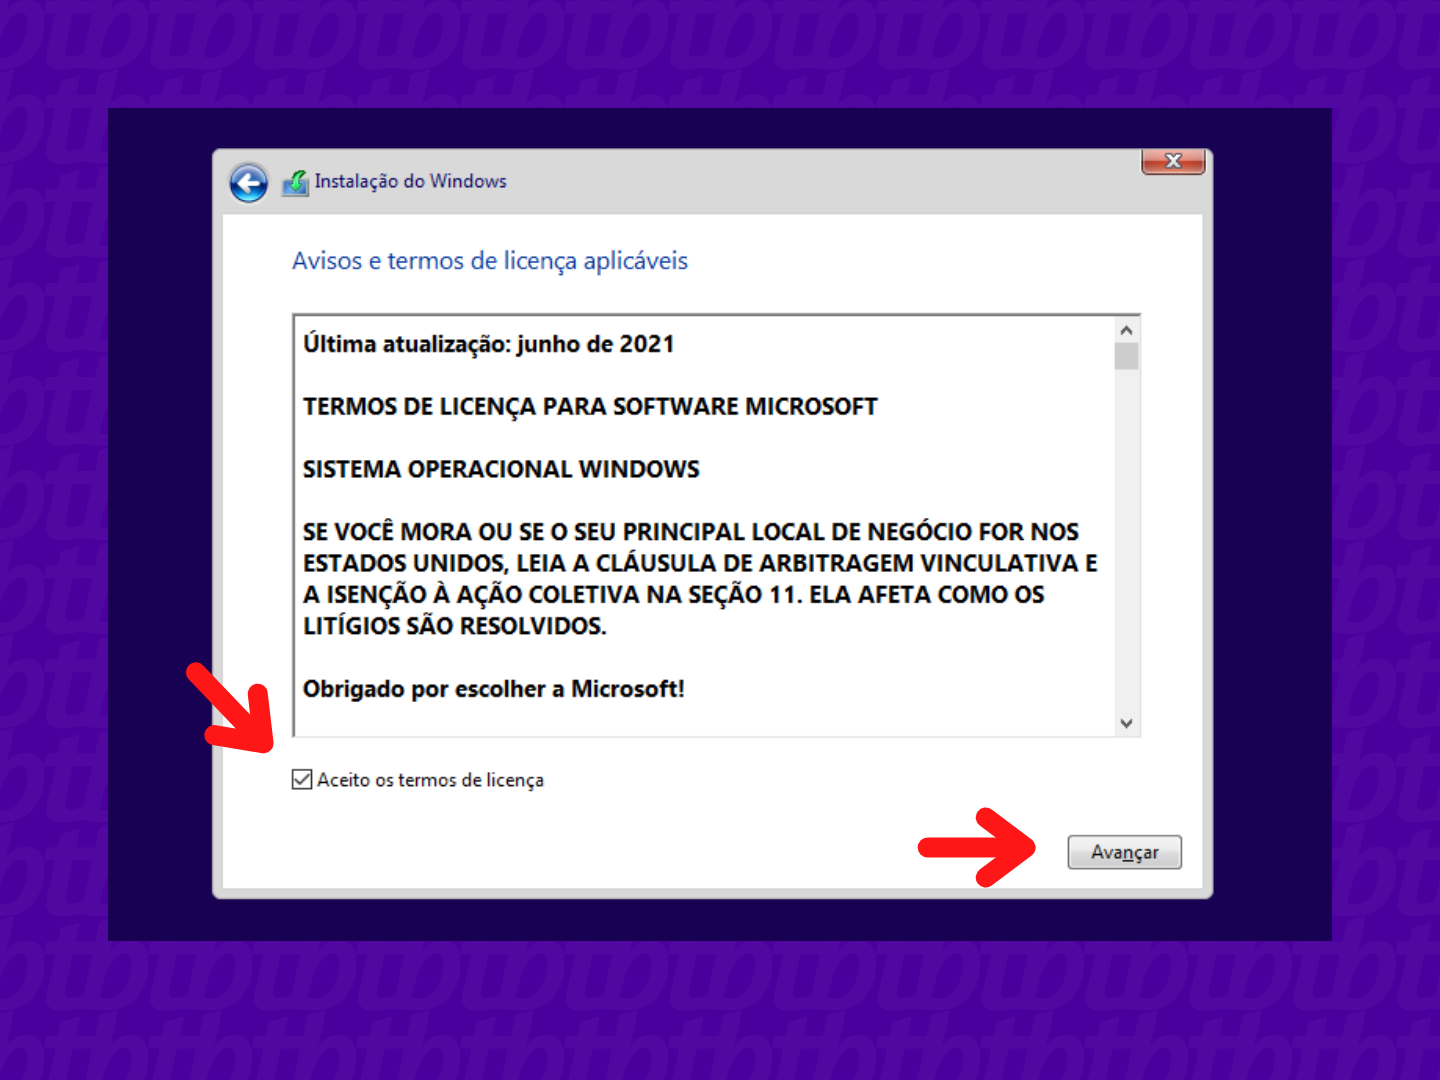 Tela de instalação do Windows 10. A caixa de aceitar os termos de licença está destacada, assim como o botão Avançar.